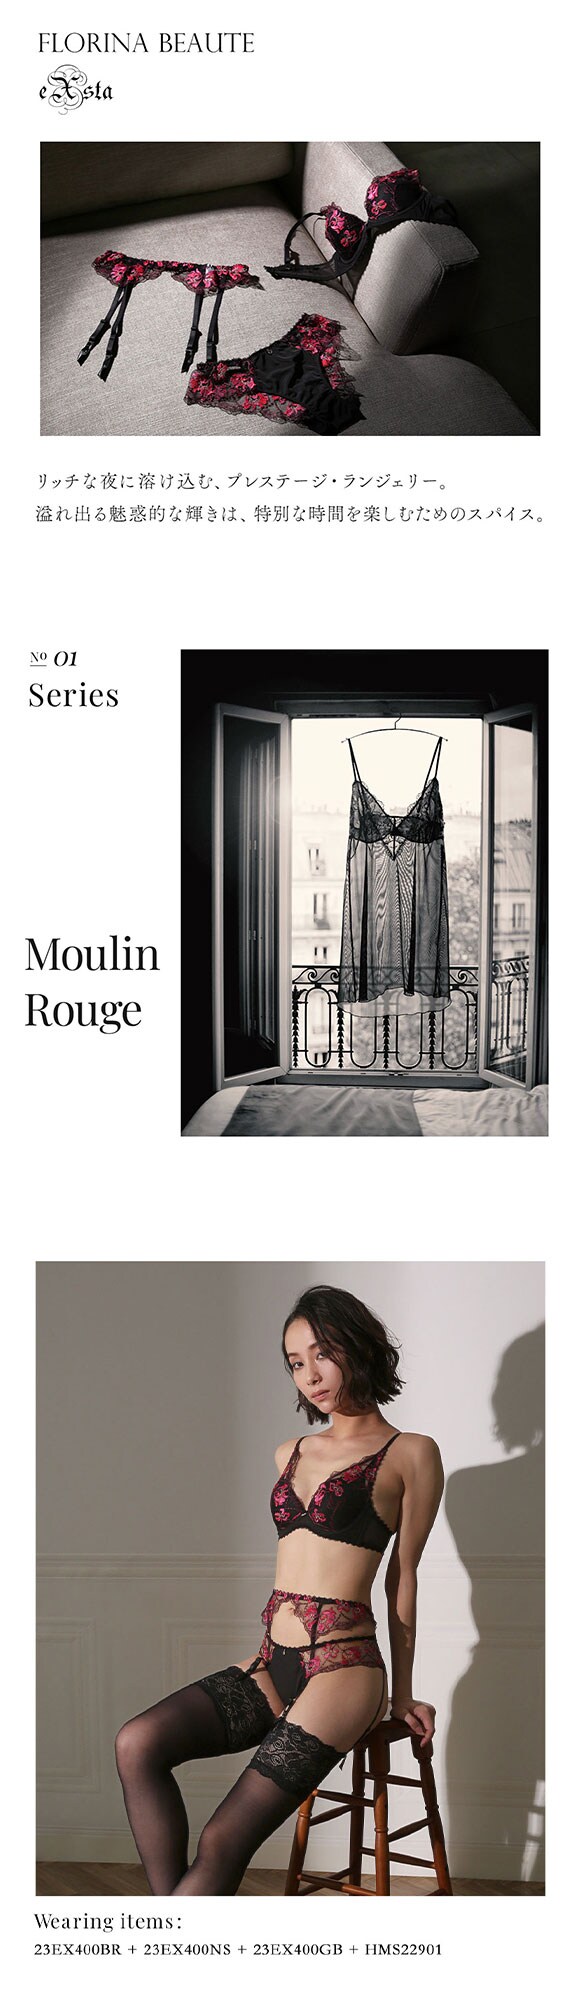 フロリナヴォーテ Moulin Rouge Tバックショーツ 総レース ML 単品 FLORINA BEAUTE eXsta ムランルージュ